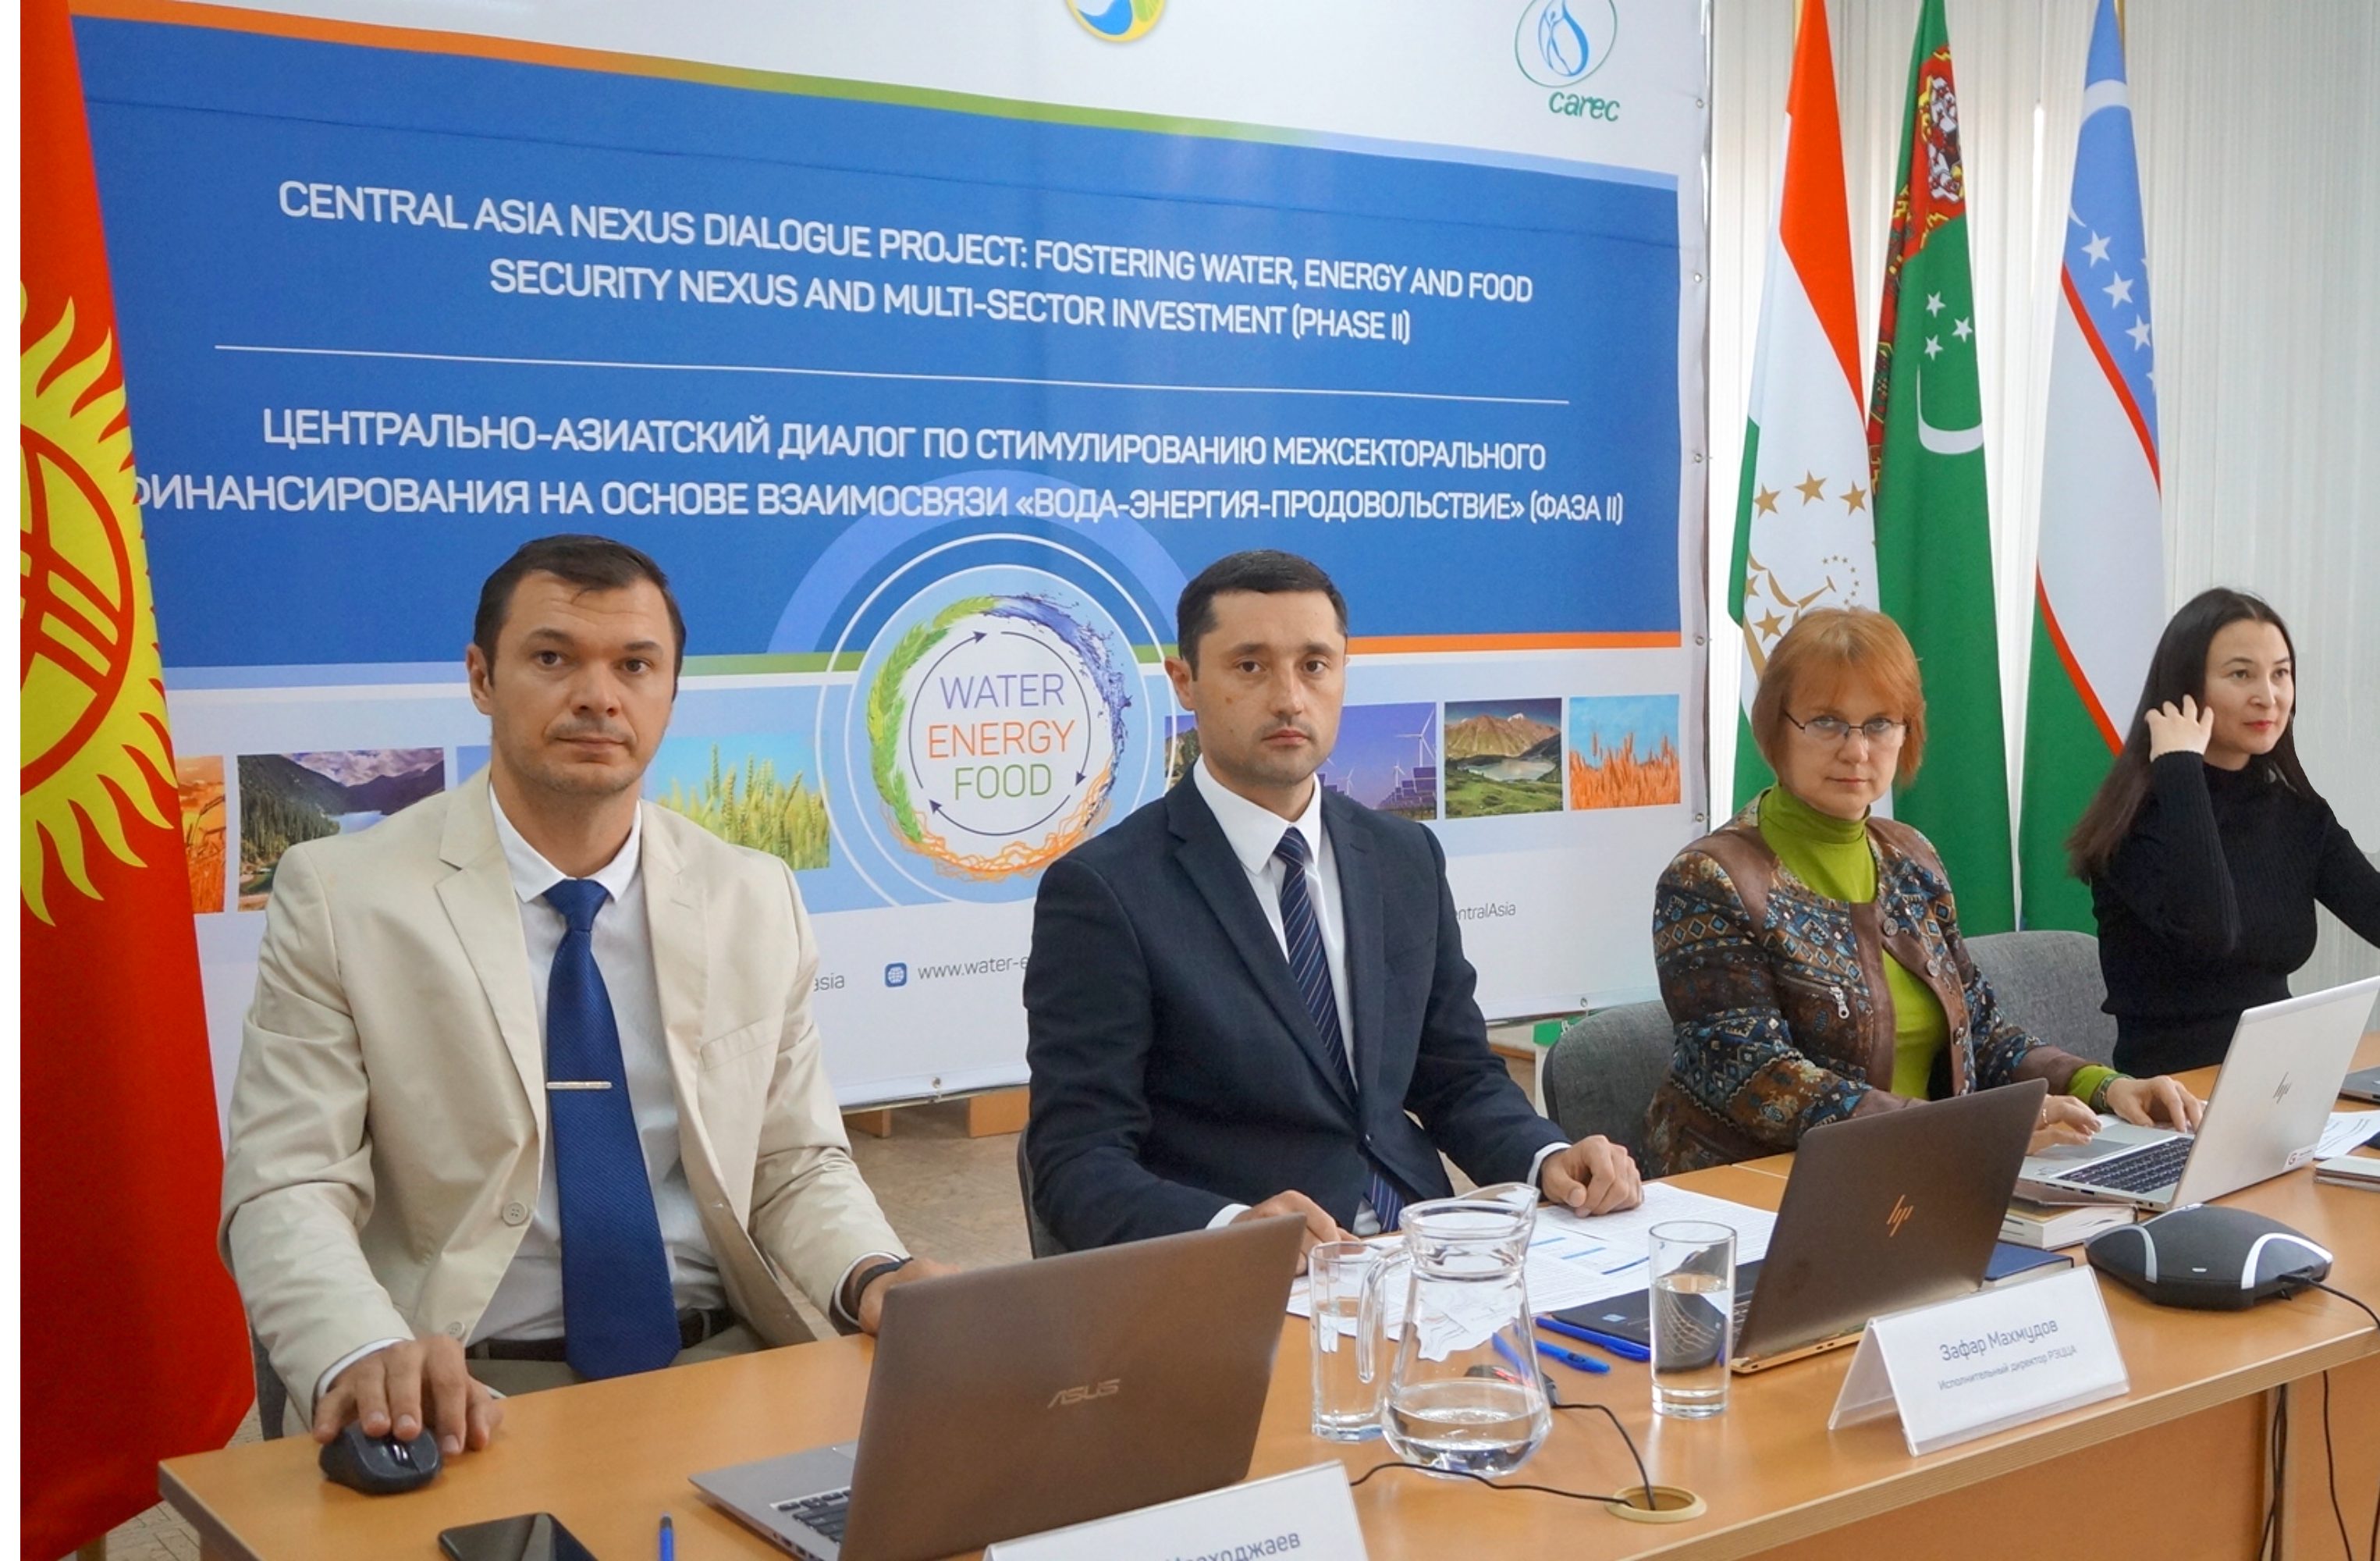 ЕС поддерживает демонстрационные проекты на основе взаимосвязи  «вода-энергия-продовольствие» в Центральной Азии 